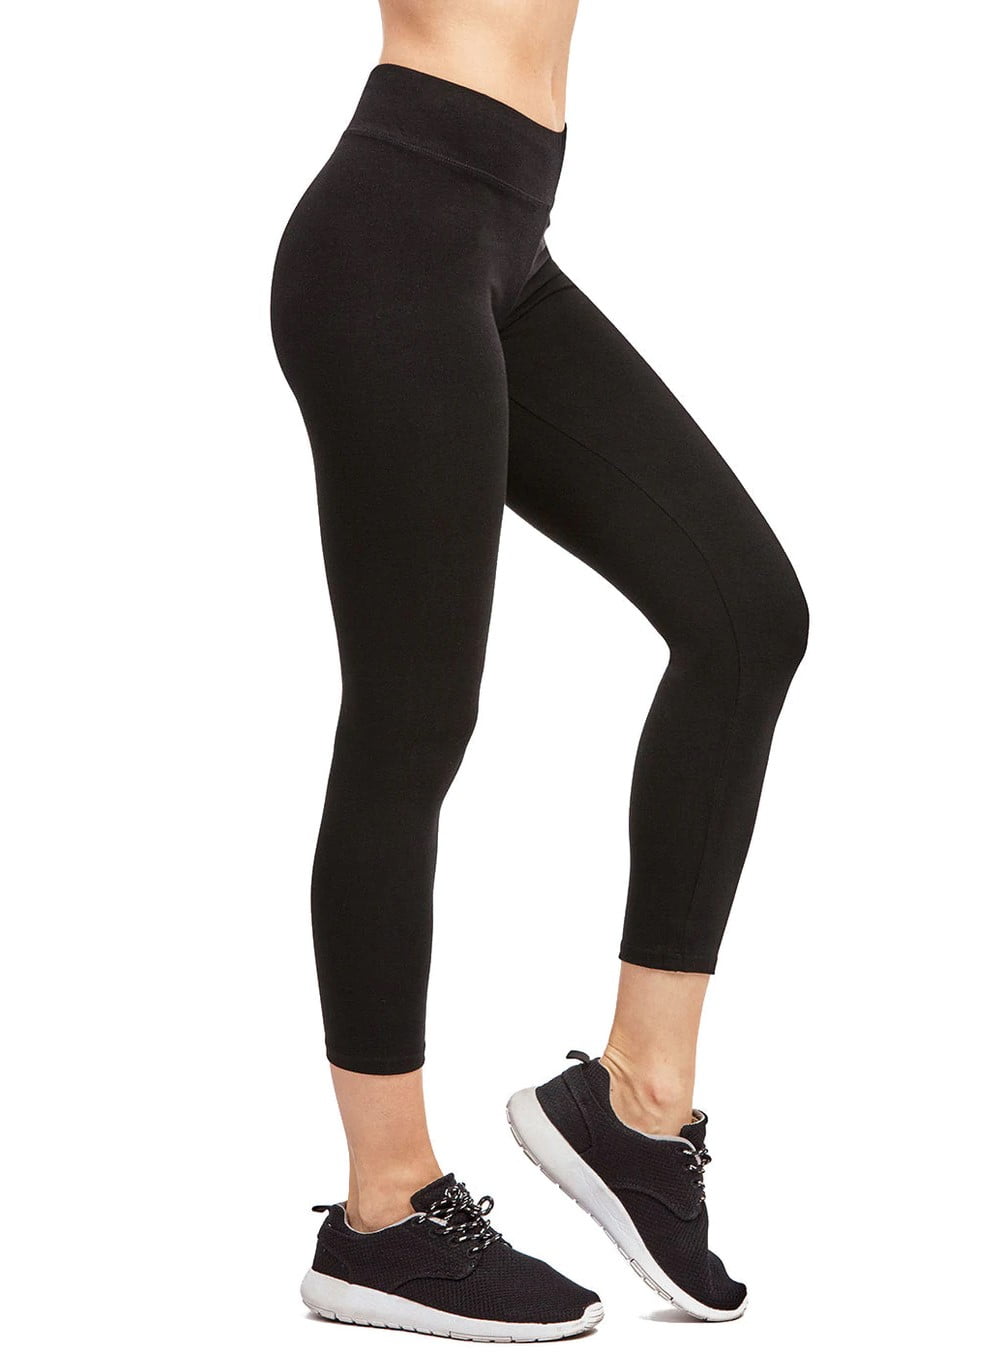 Couver Women's Cotton Soft Capri Leggings Activewear, Black-L, 1 Count ...